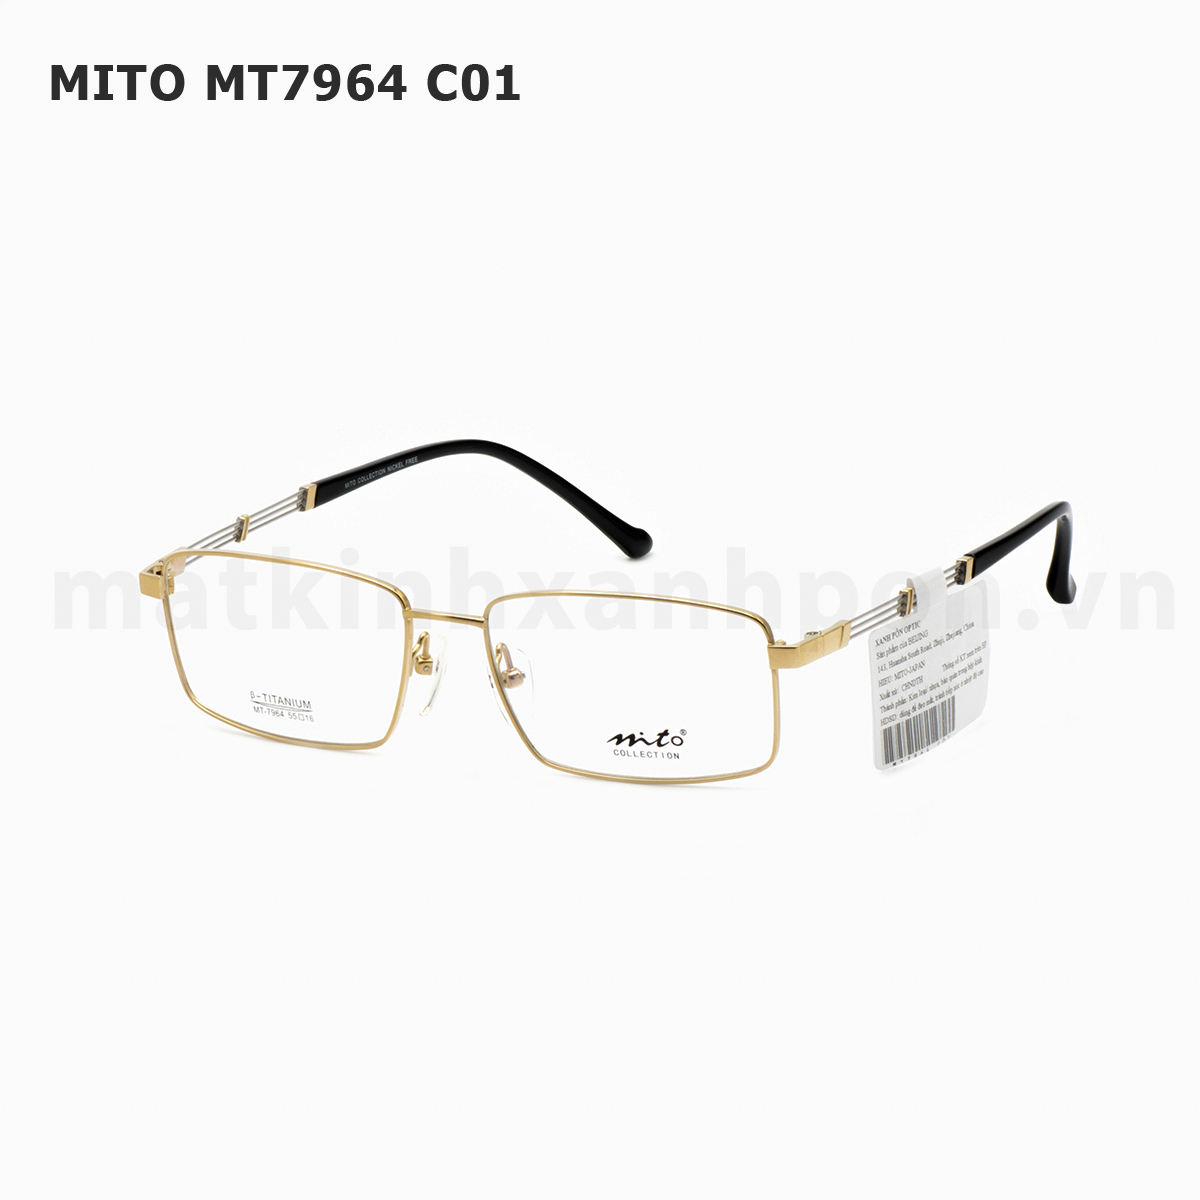 Mito MT7964 C01